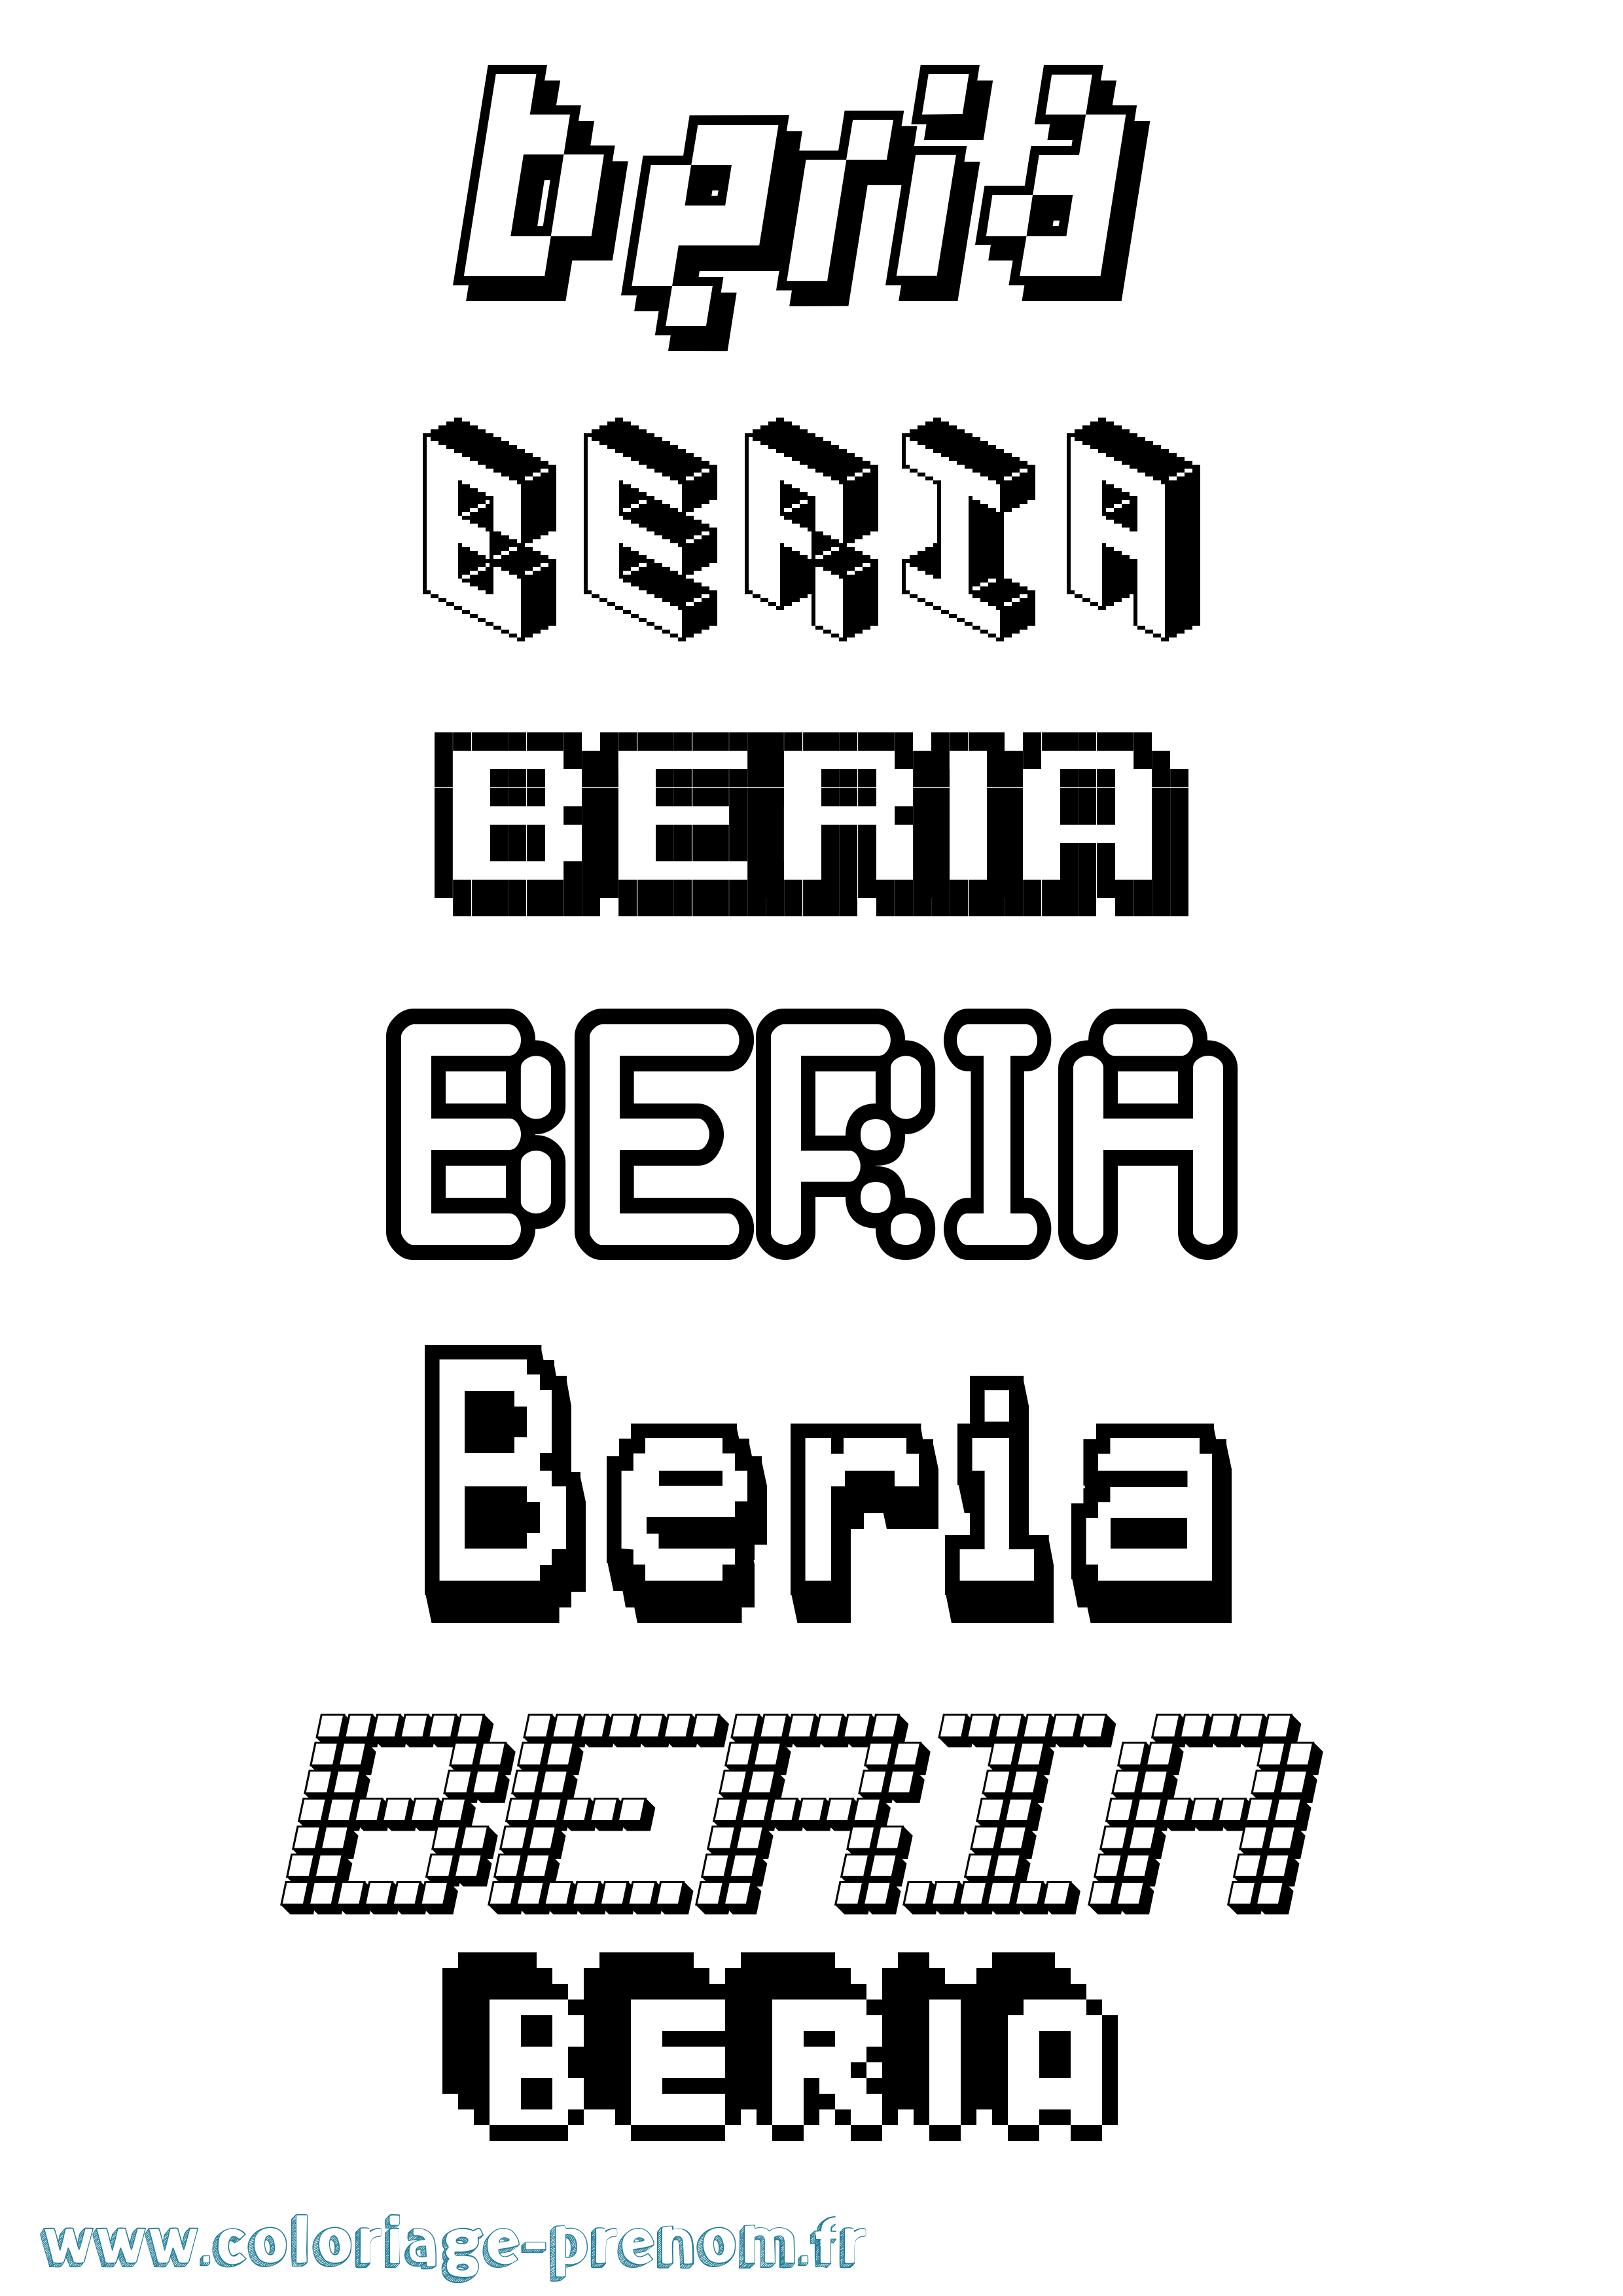 Coloriage prénom Beria Pixel